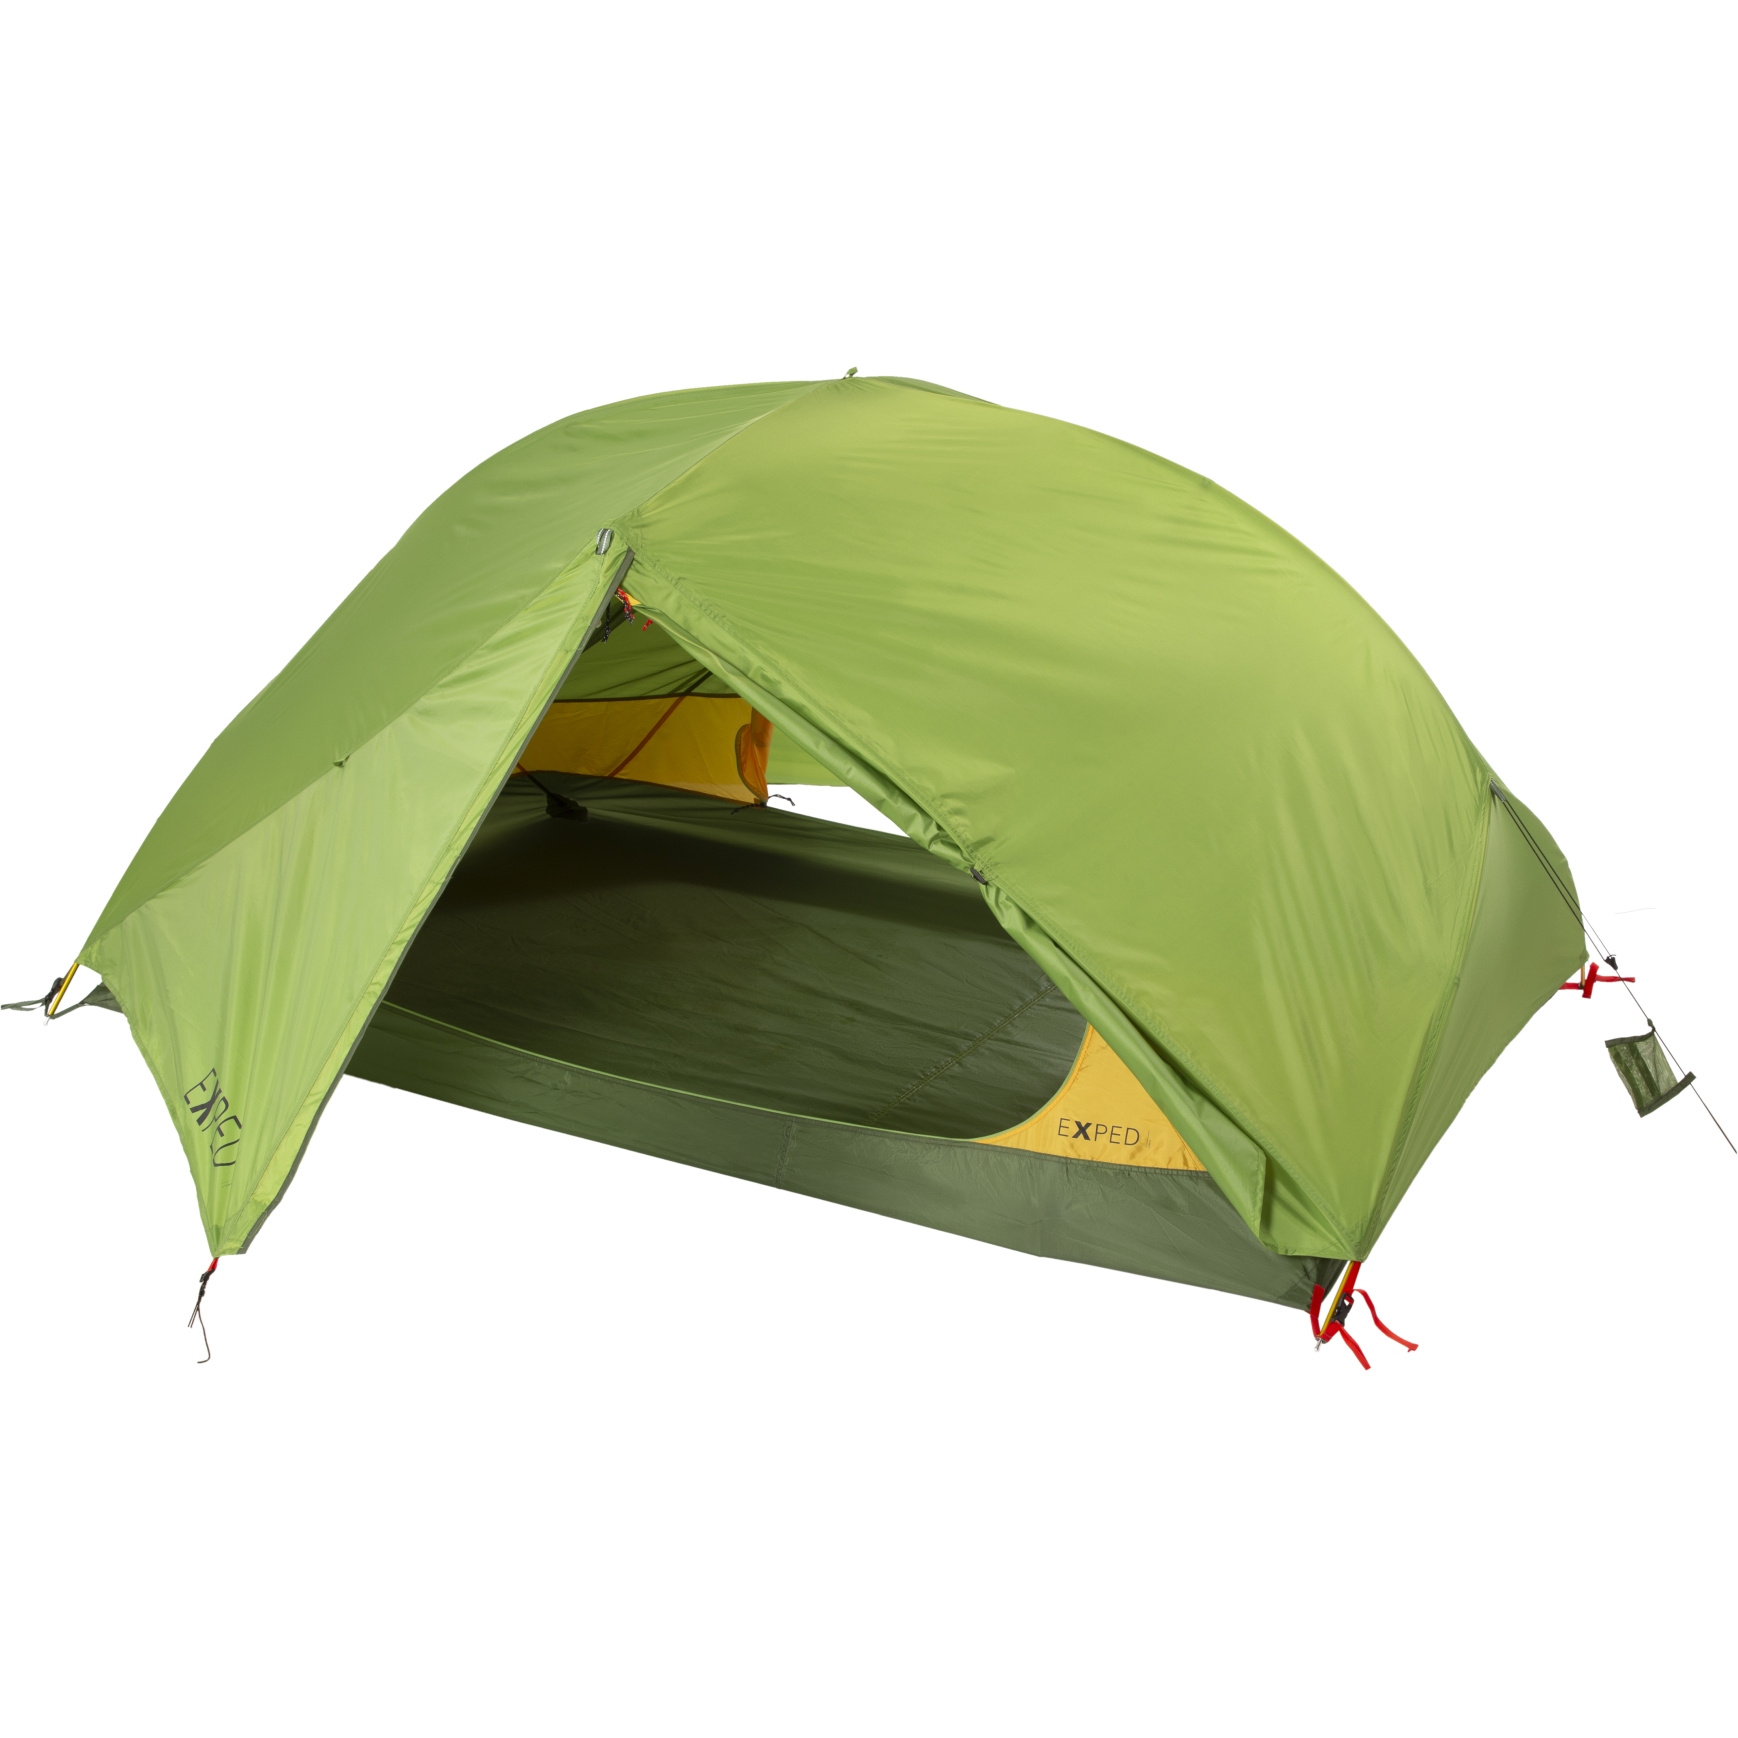 Productfoto van Exped Lyra II Tent - meadow